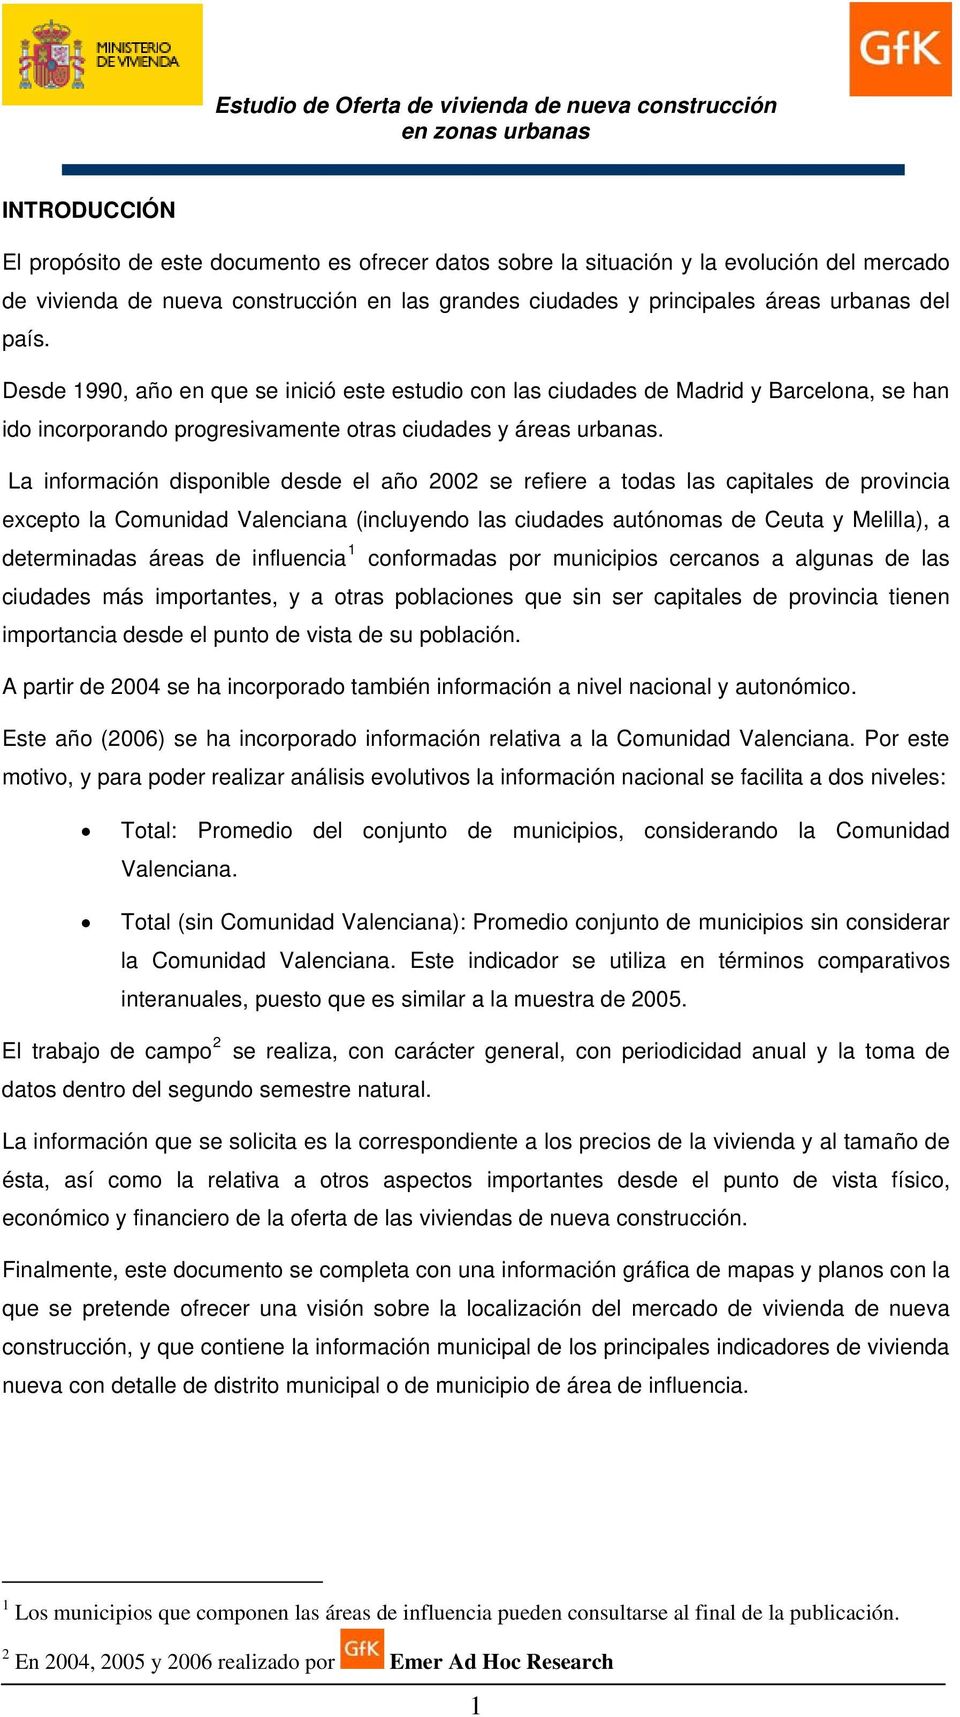 La información disponible desde el año 2002 se refiere a todas las capitales de provincia excepto la Comunidad Valenciana (incluyendo las ciudades autónomas de Ceuta y Melilla), a determinadas áreas